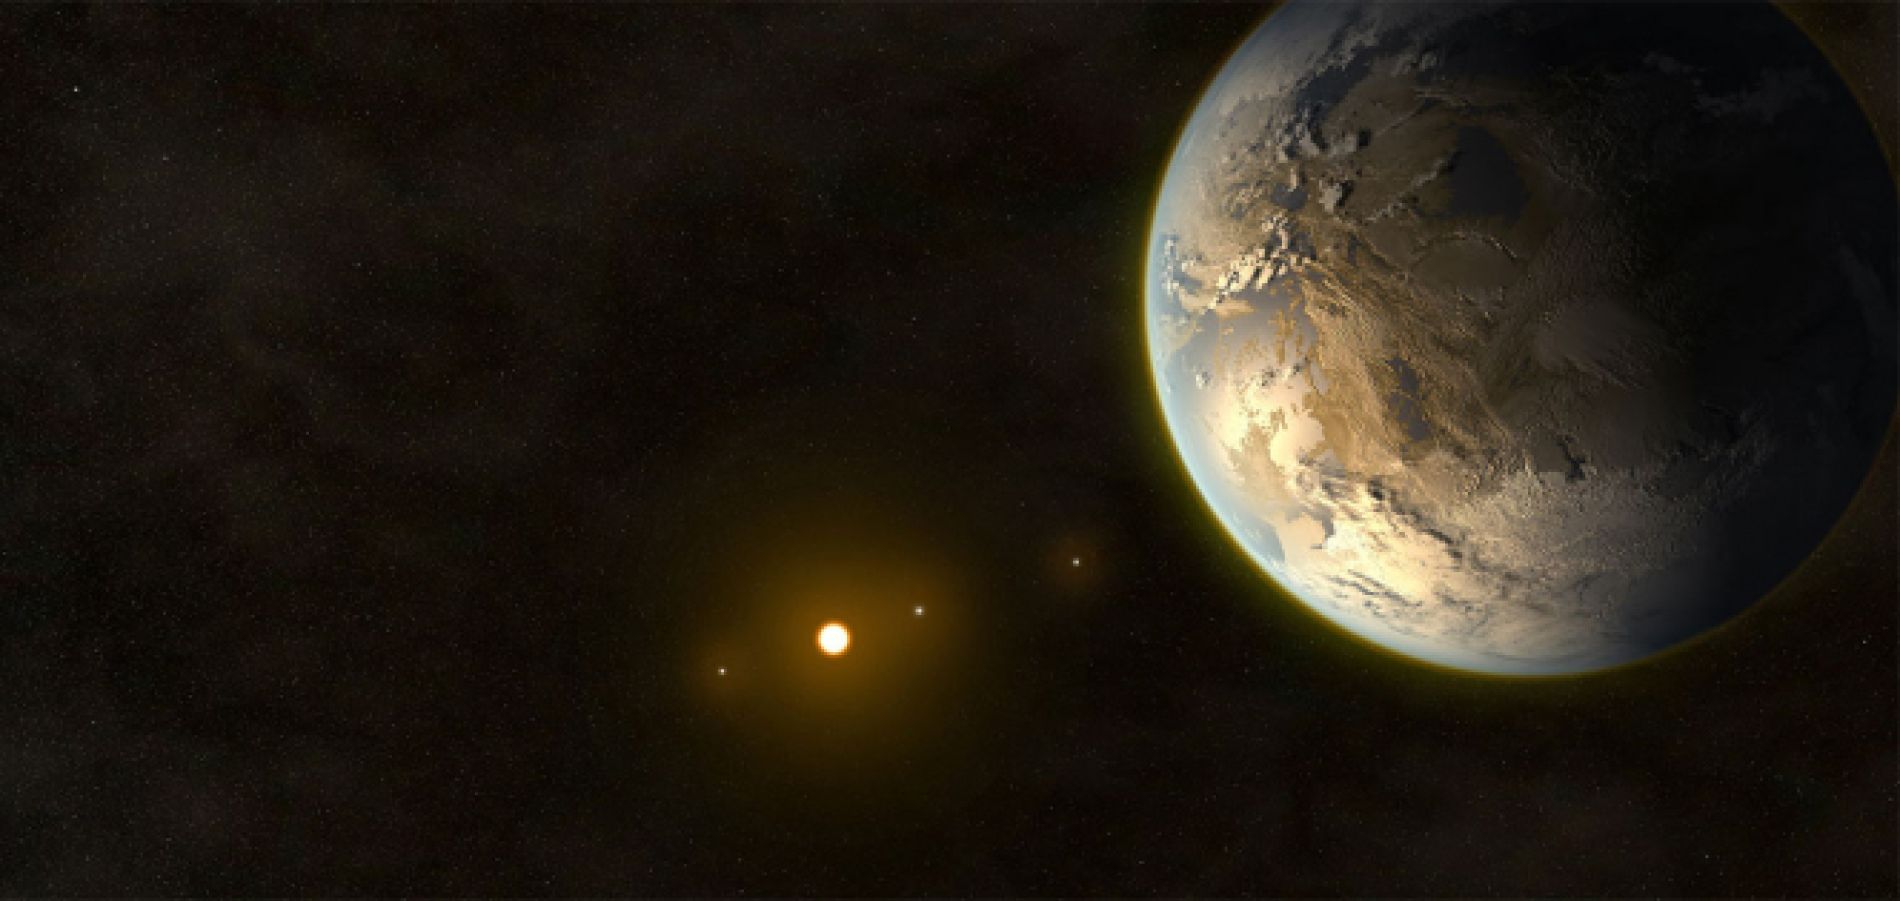 K2-33b en ilustración. Uno de los exoplanetas más jóvenes detectados hasta la fecha mediante el telescopio espacial Kepler de la NASA. Foto: Envato.